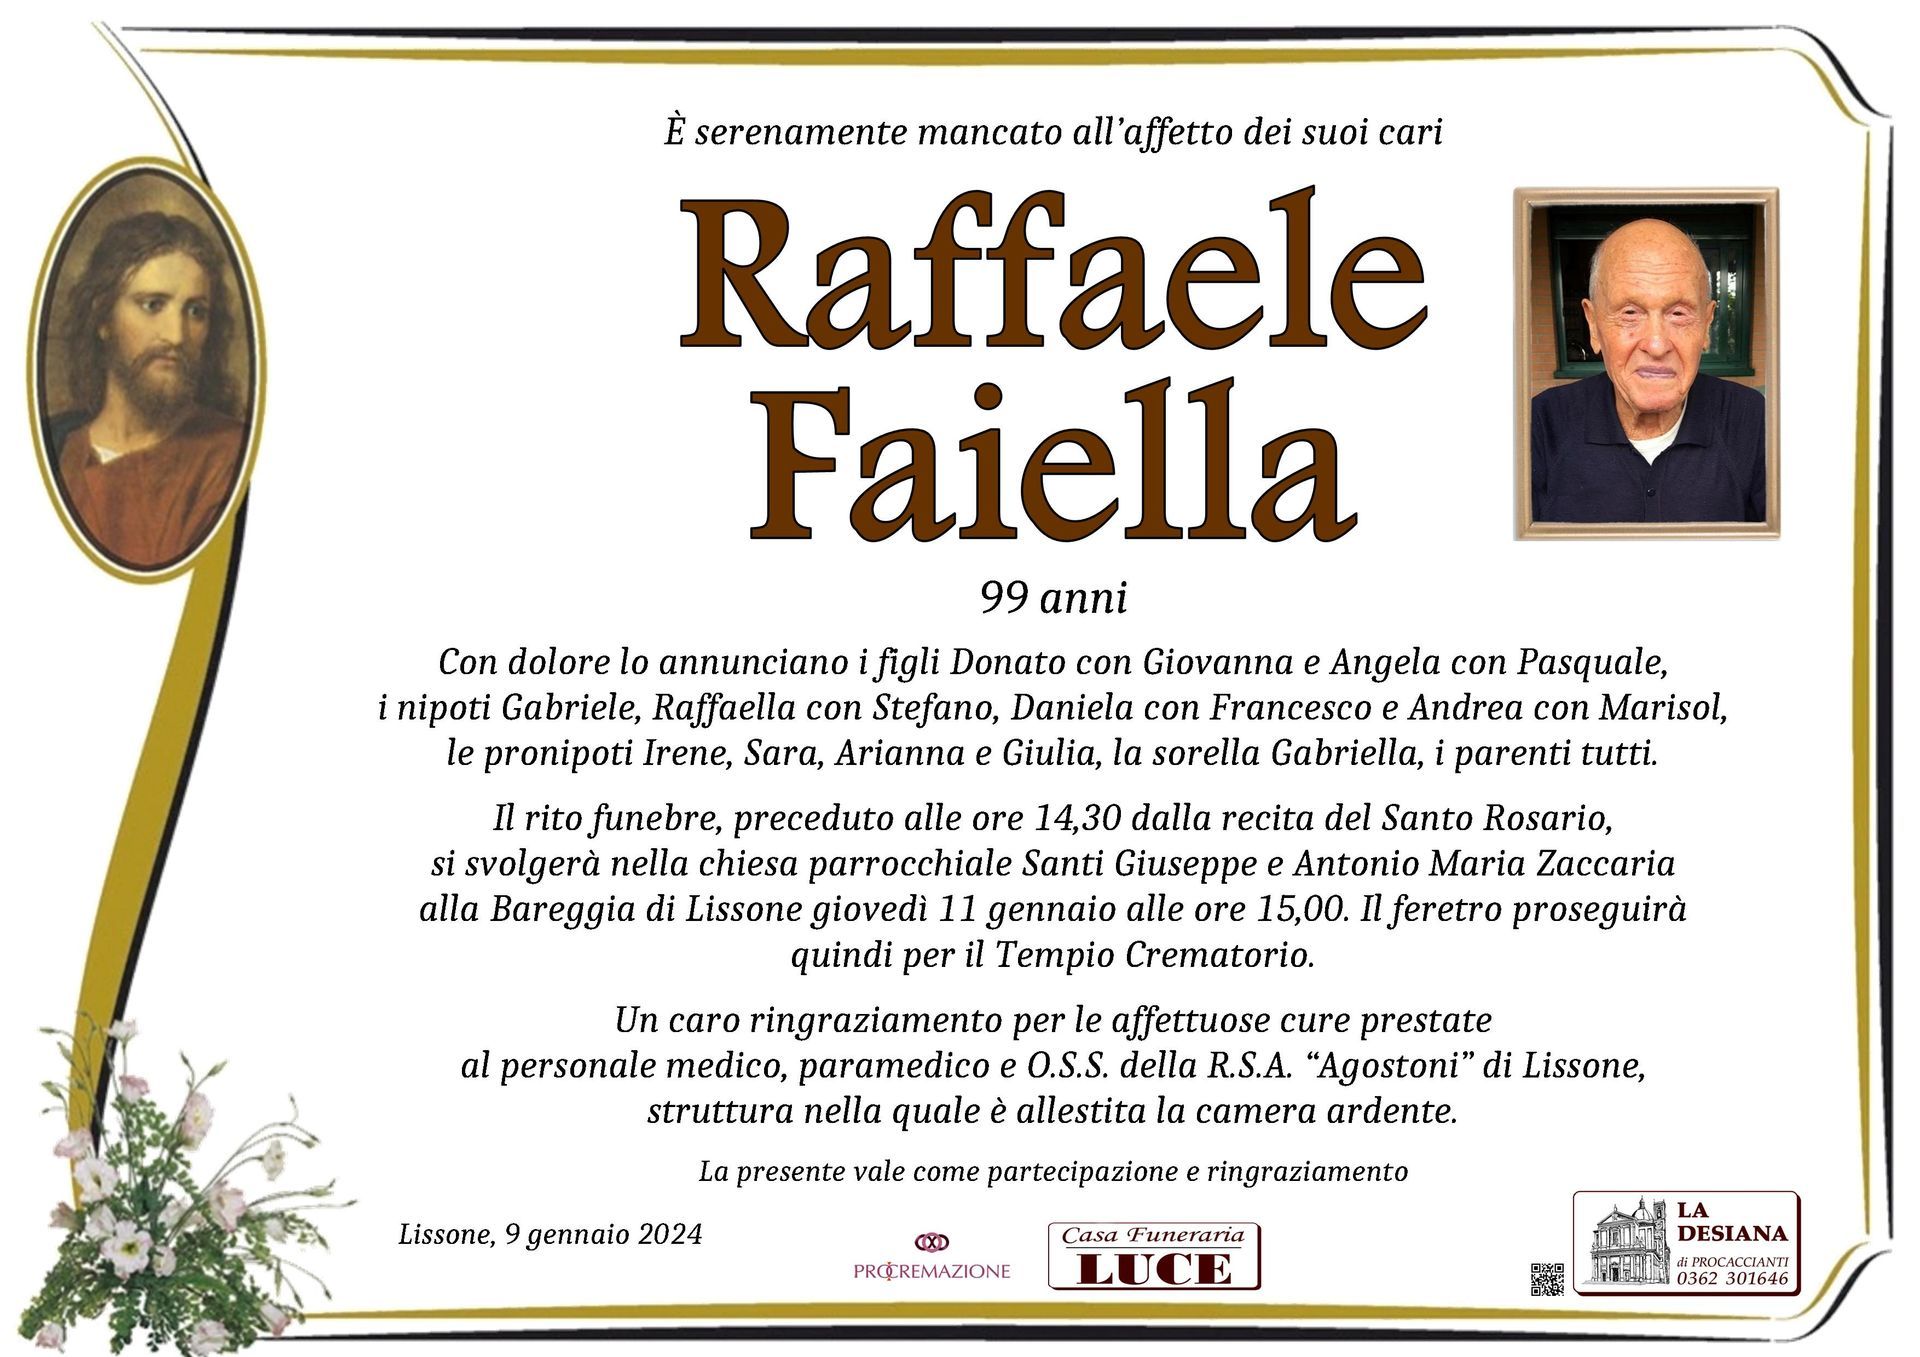 Raffaele Faiella